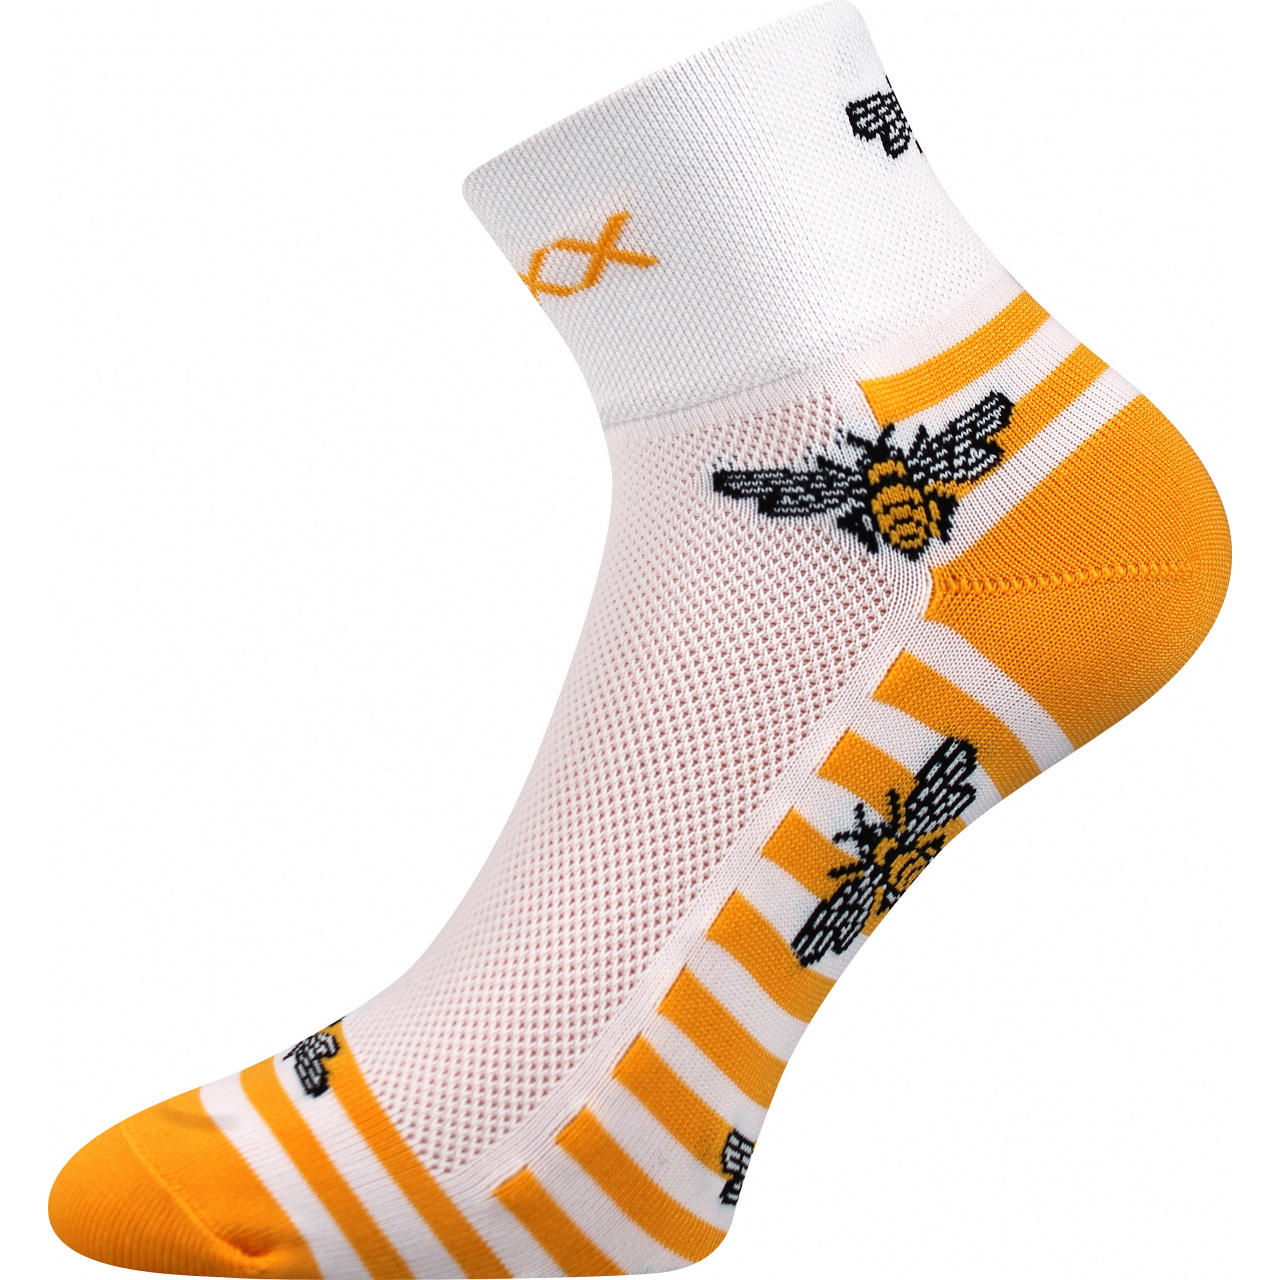 Ponožky sportovní unisex Voxx Ralf X Včelky - bílé-žluté, 39-42